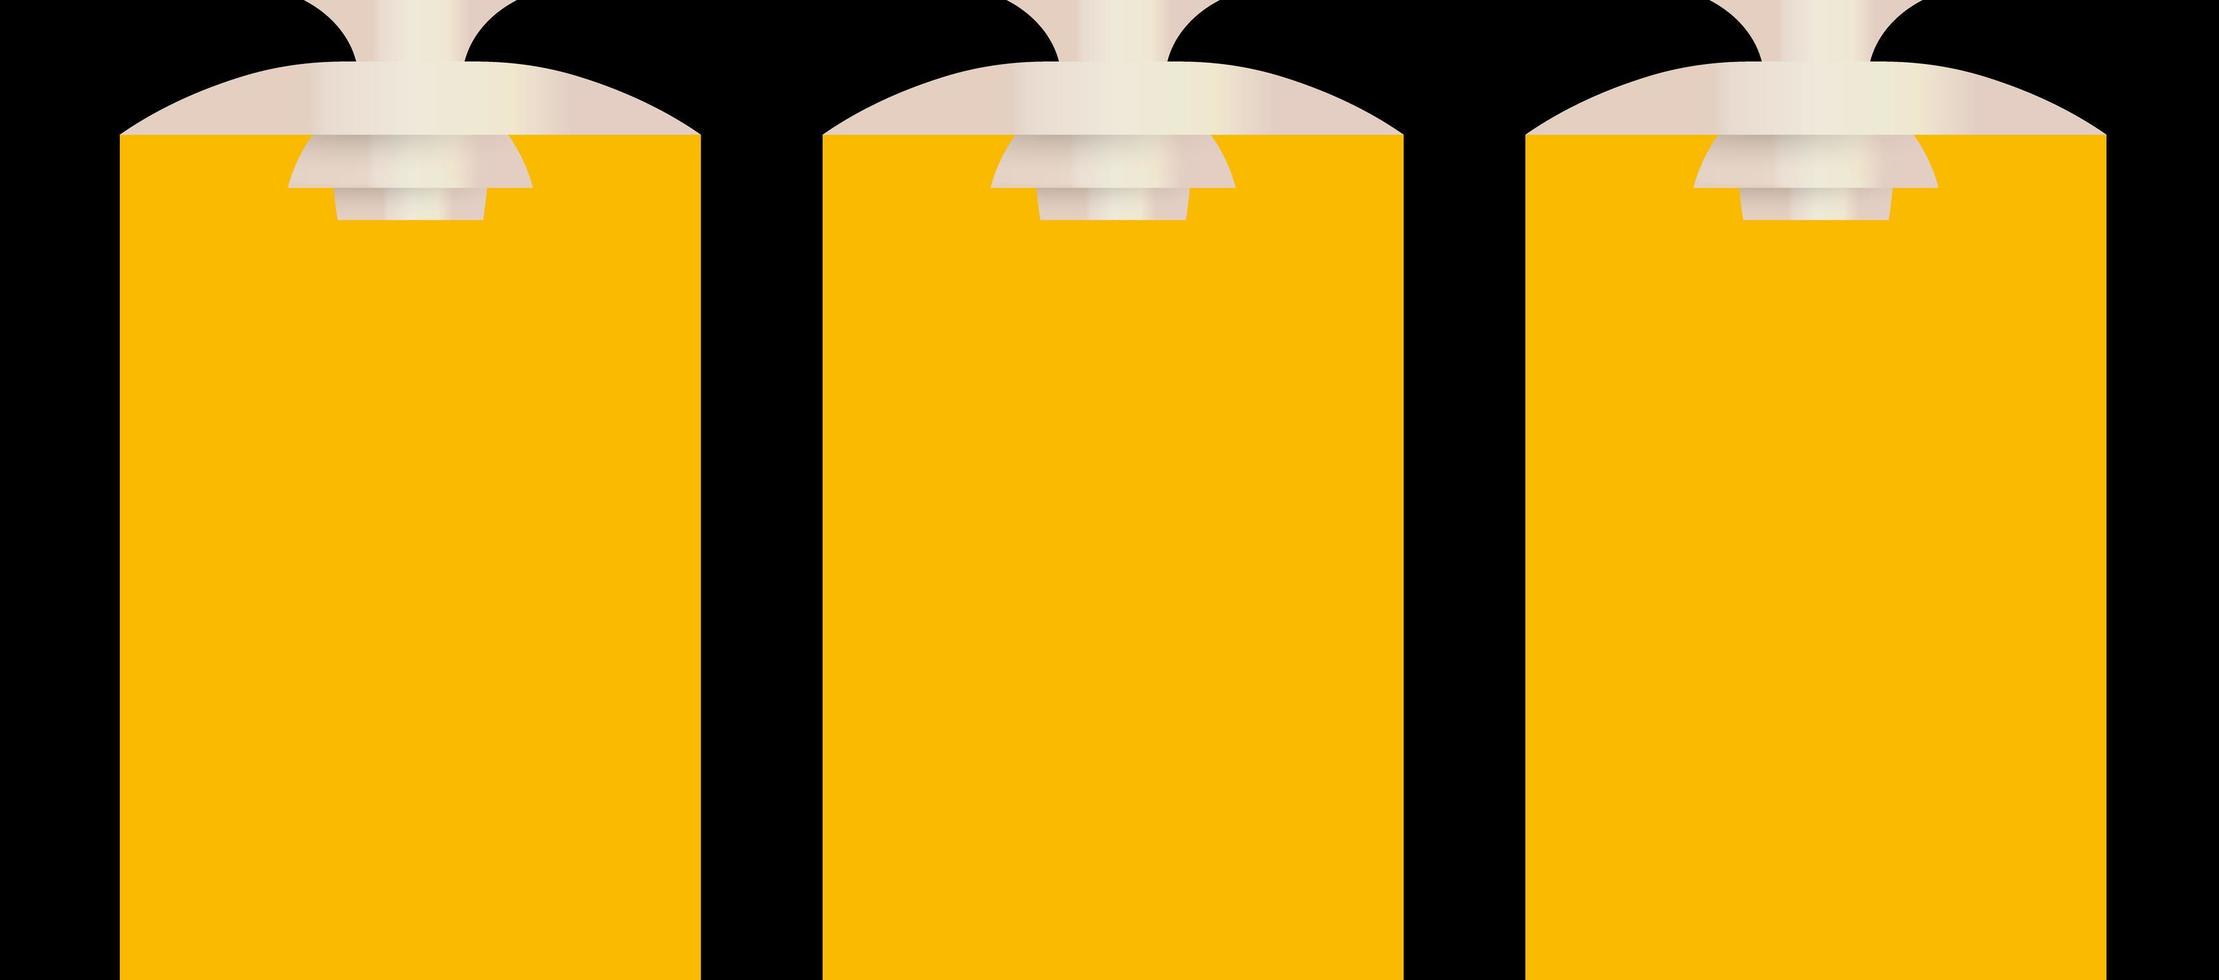 luz alta iluminada, fundo de mensagem de texto para banner, cartaz e folheto, publicidade e anúncio. raio amarelo, quadro iluminado. ilustração vetorial vetor